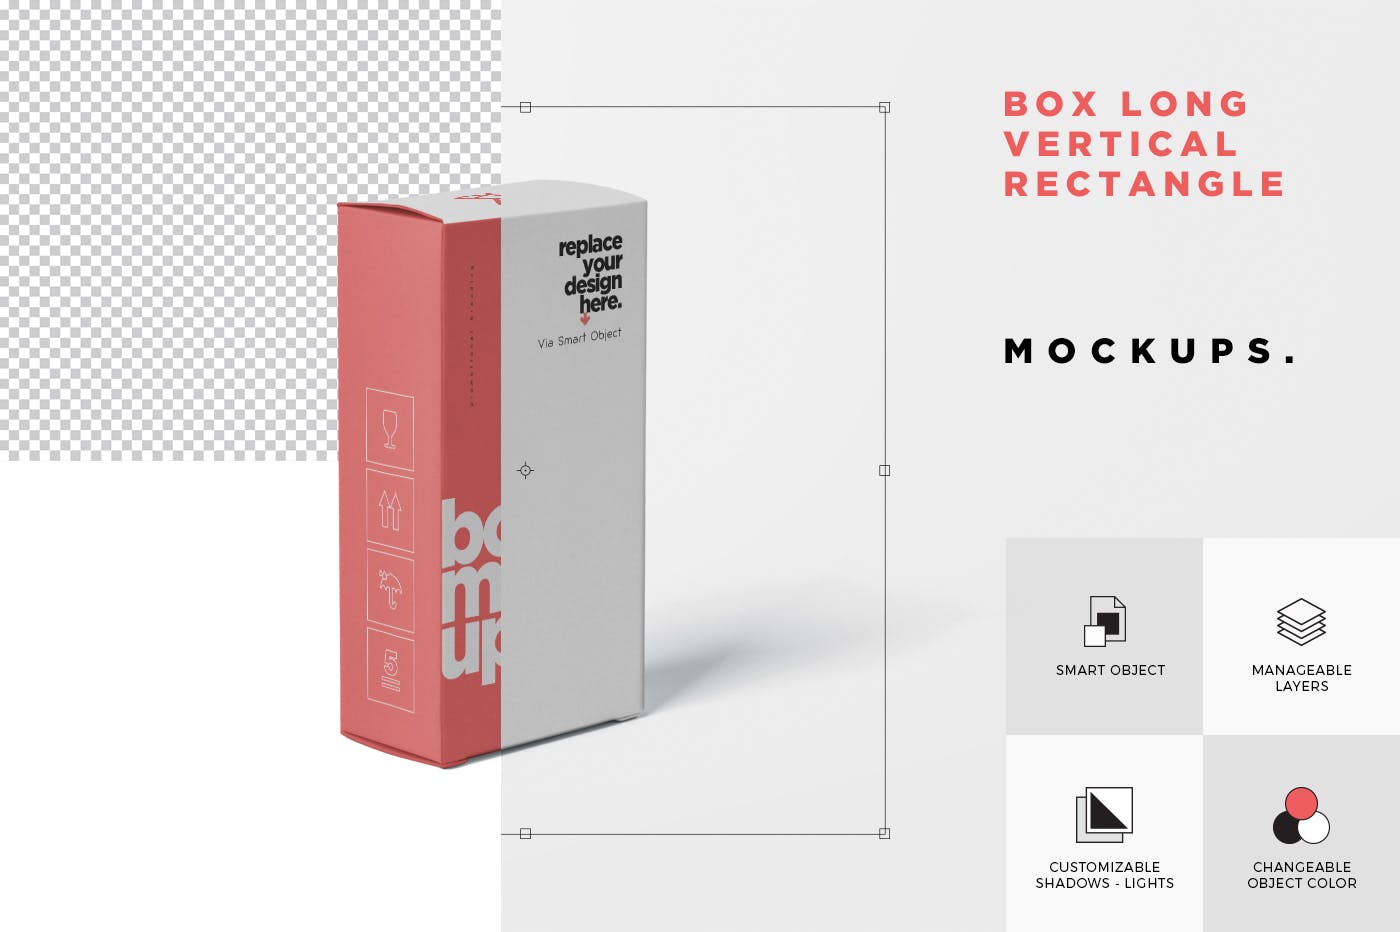 避孕套包装盒外观设计素材库精选模板 Box Mockup  Long Vertical Rectangle插图(4)